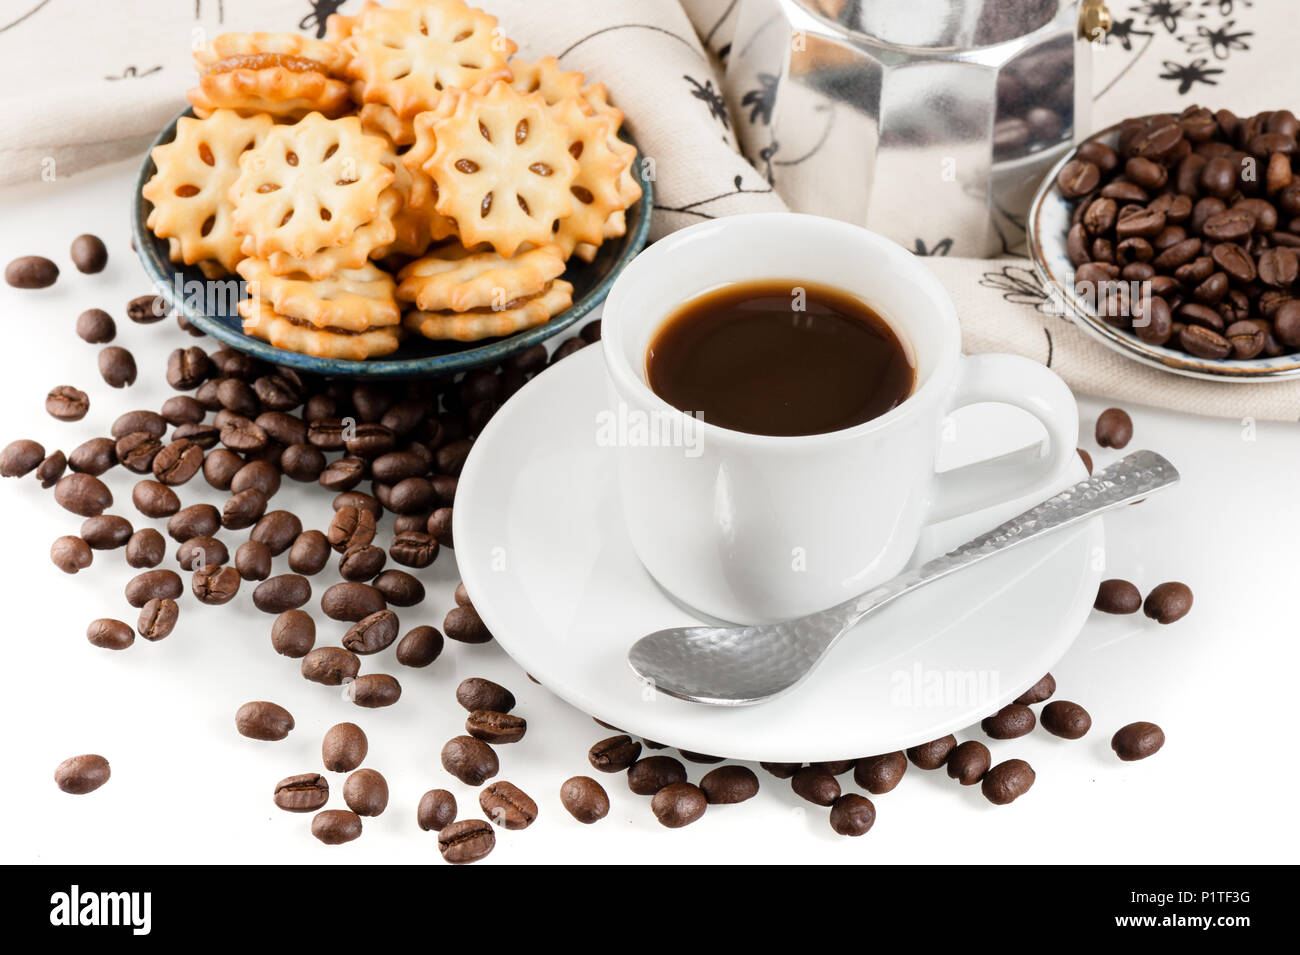 Gli amanti del caffe' concetto, caffè e attrezzature Foto Stock